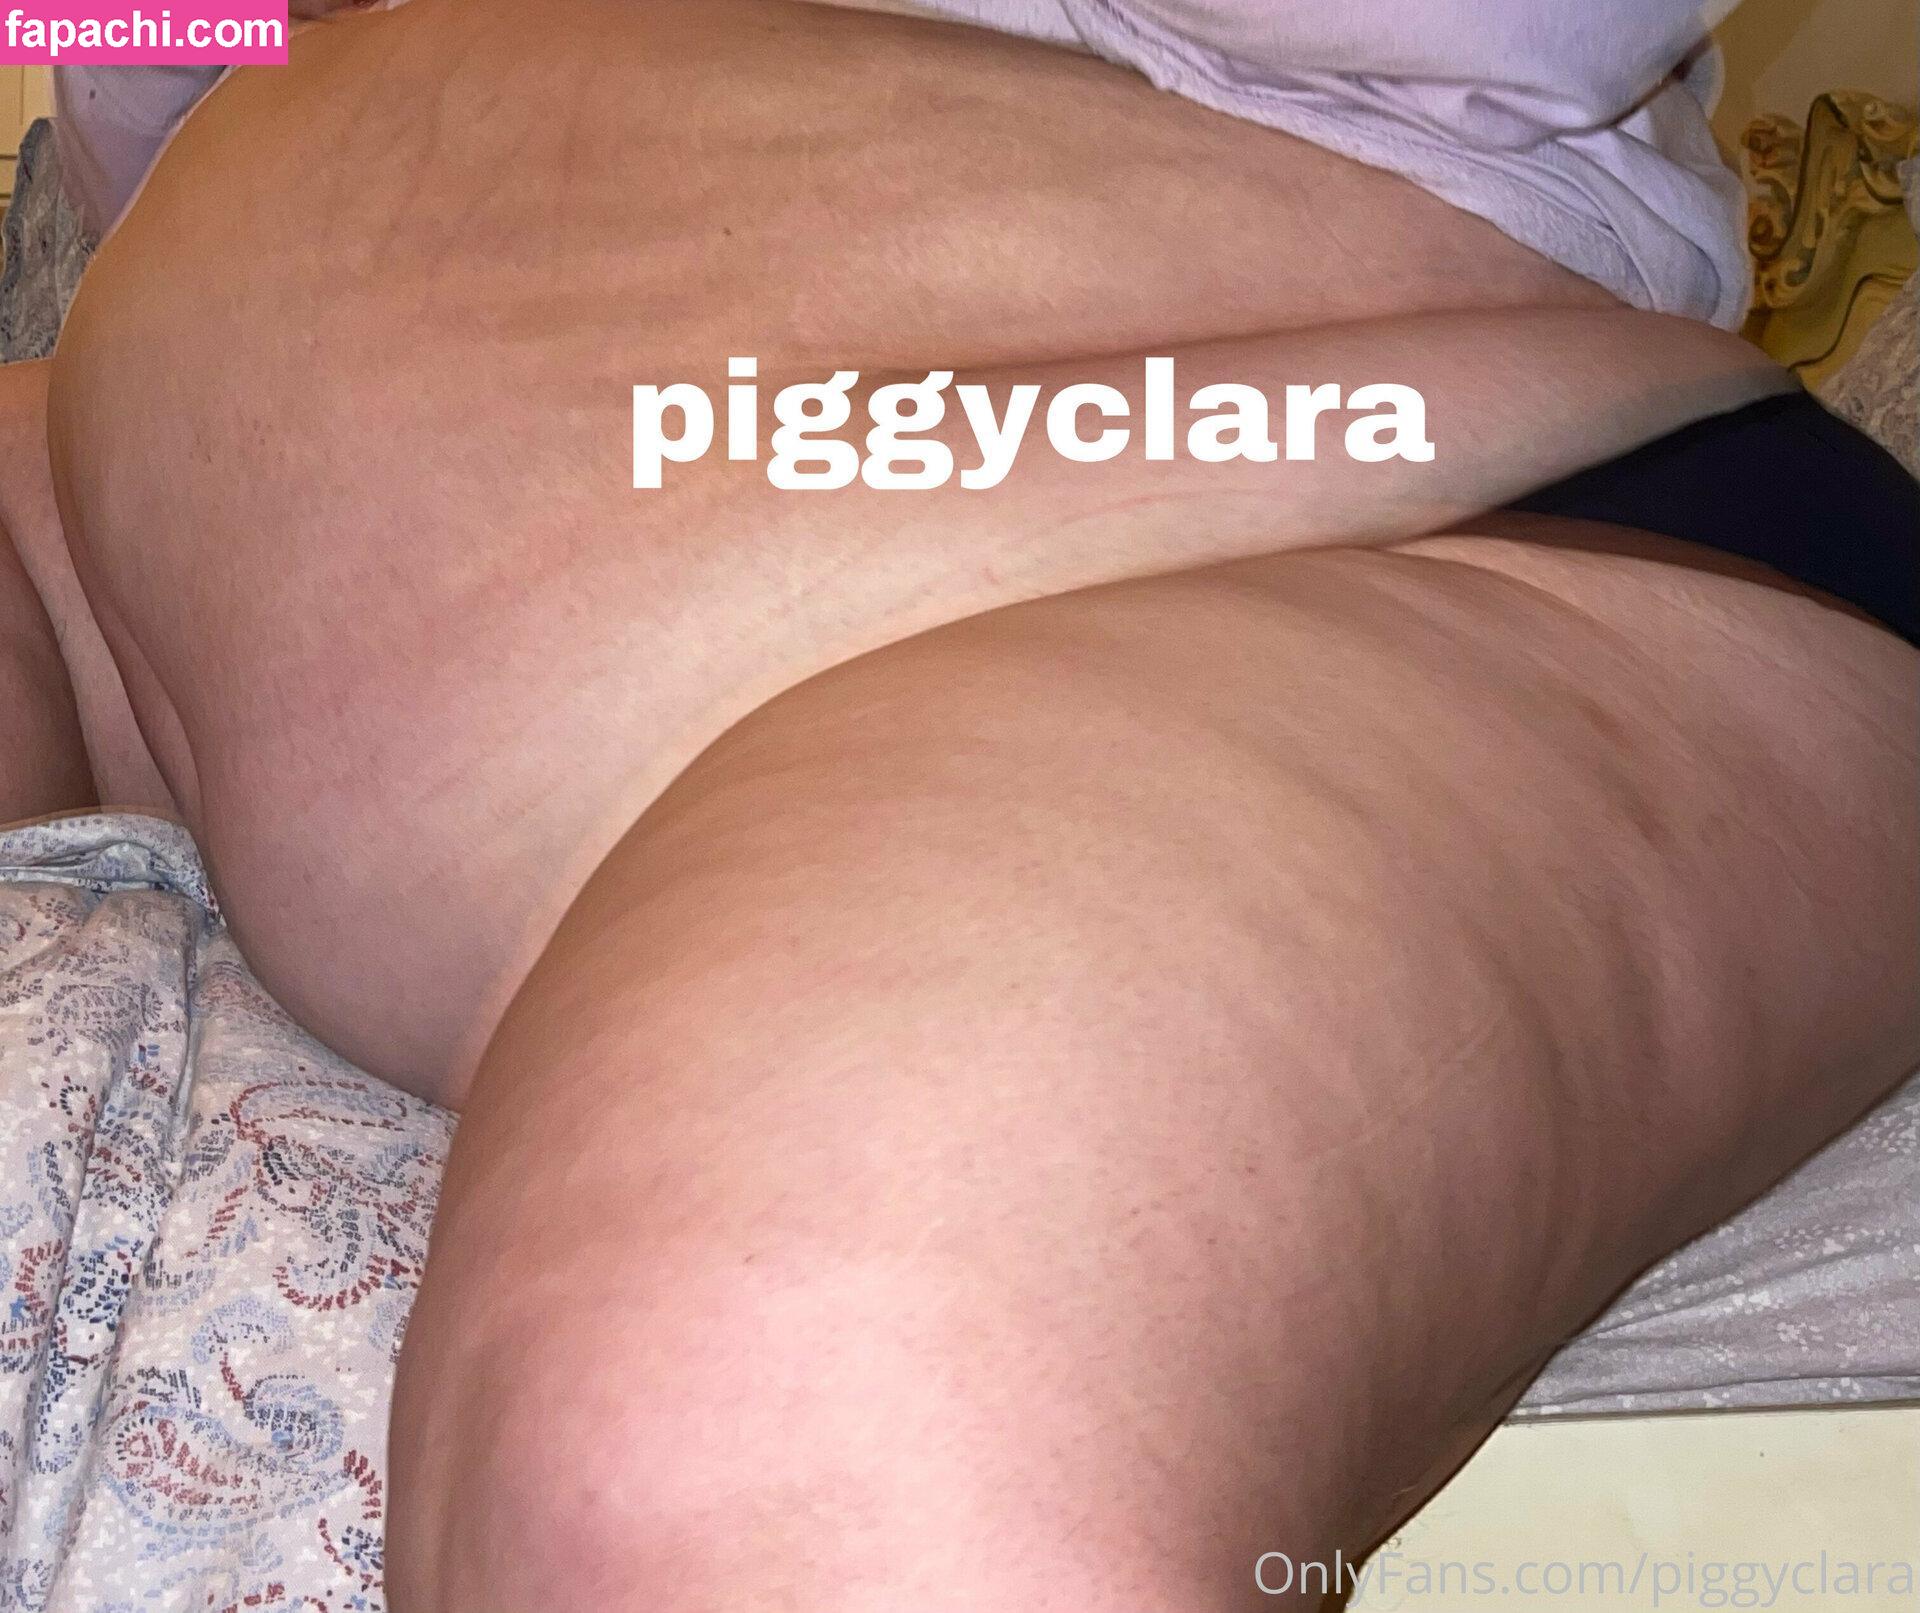 piggyclara / xfatqueenx leaked nude photo #0025 from OnlyFans/Patreon